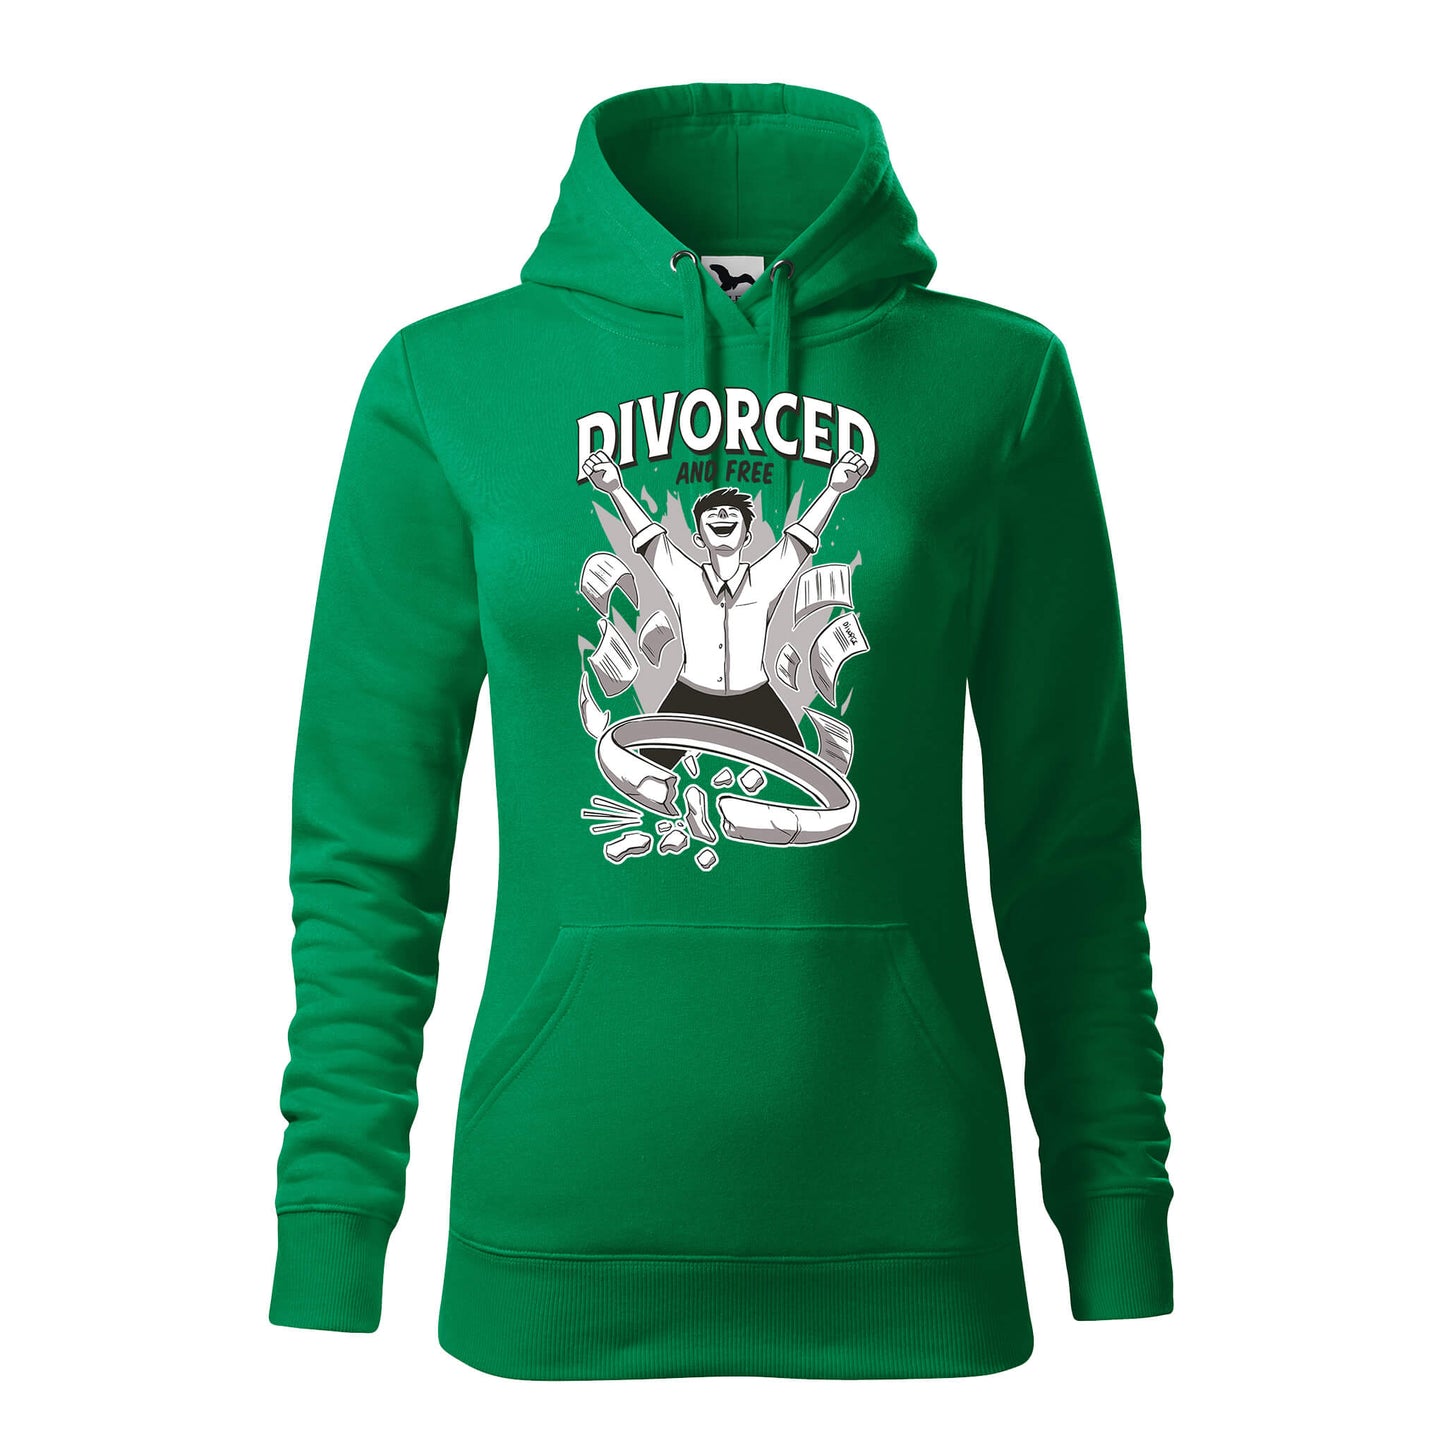 Divorced free hoodie - rvdesignprint